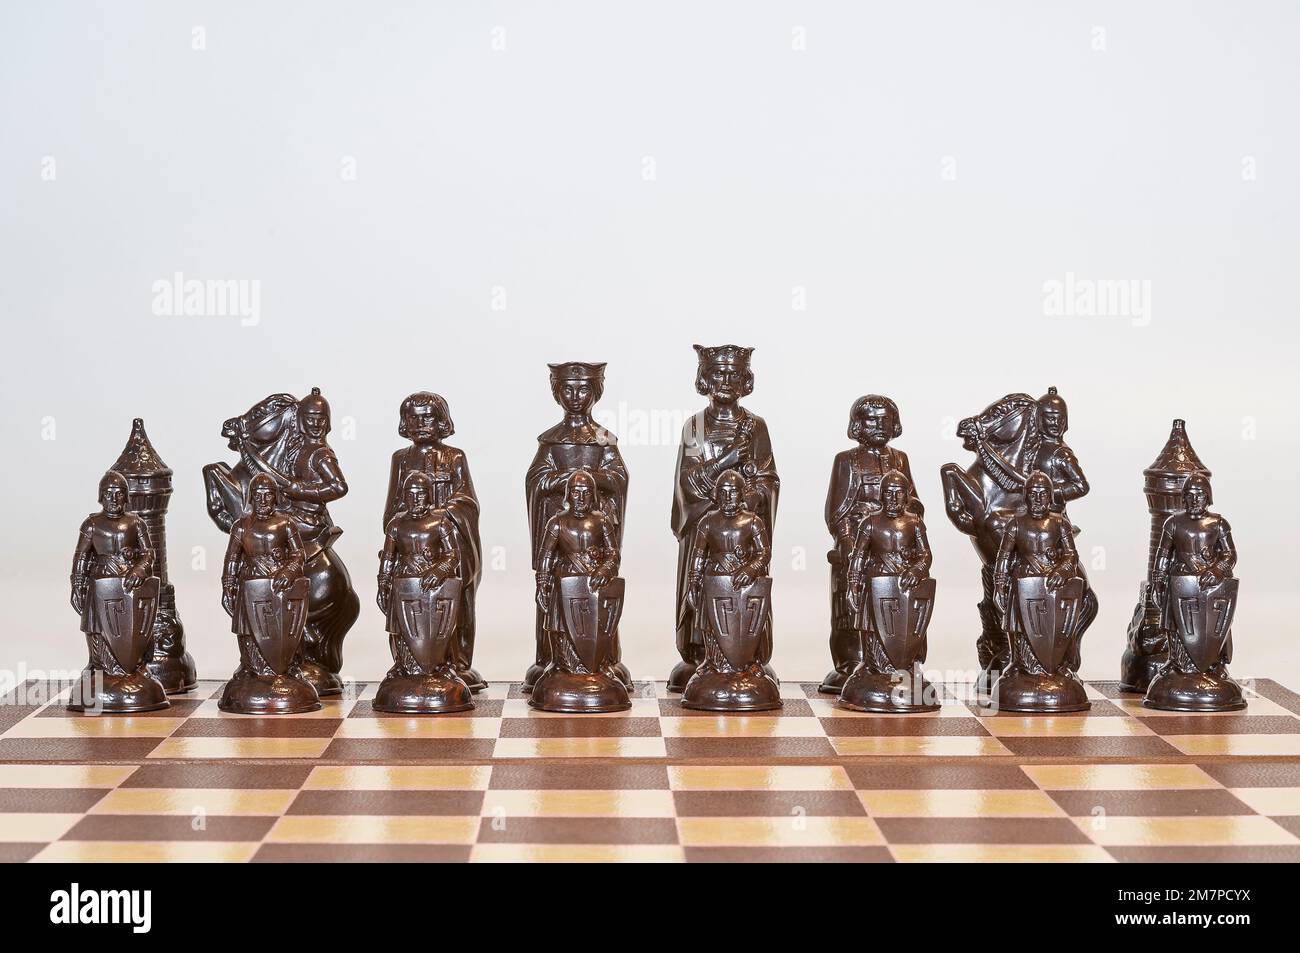 Pezzi di scacchi neri o di colore scuro molto dettagliati nelle posizioni iniziali di partenza. Modellato su un set rinascimentale del 15th° secolo. Foto Stock